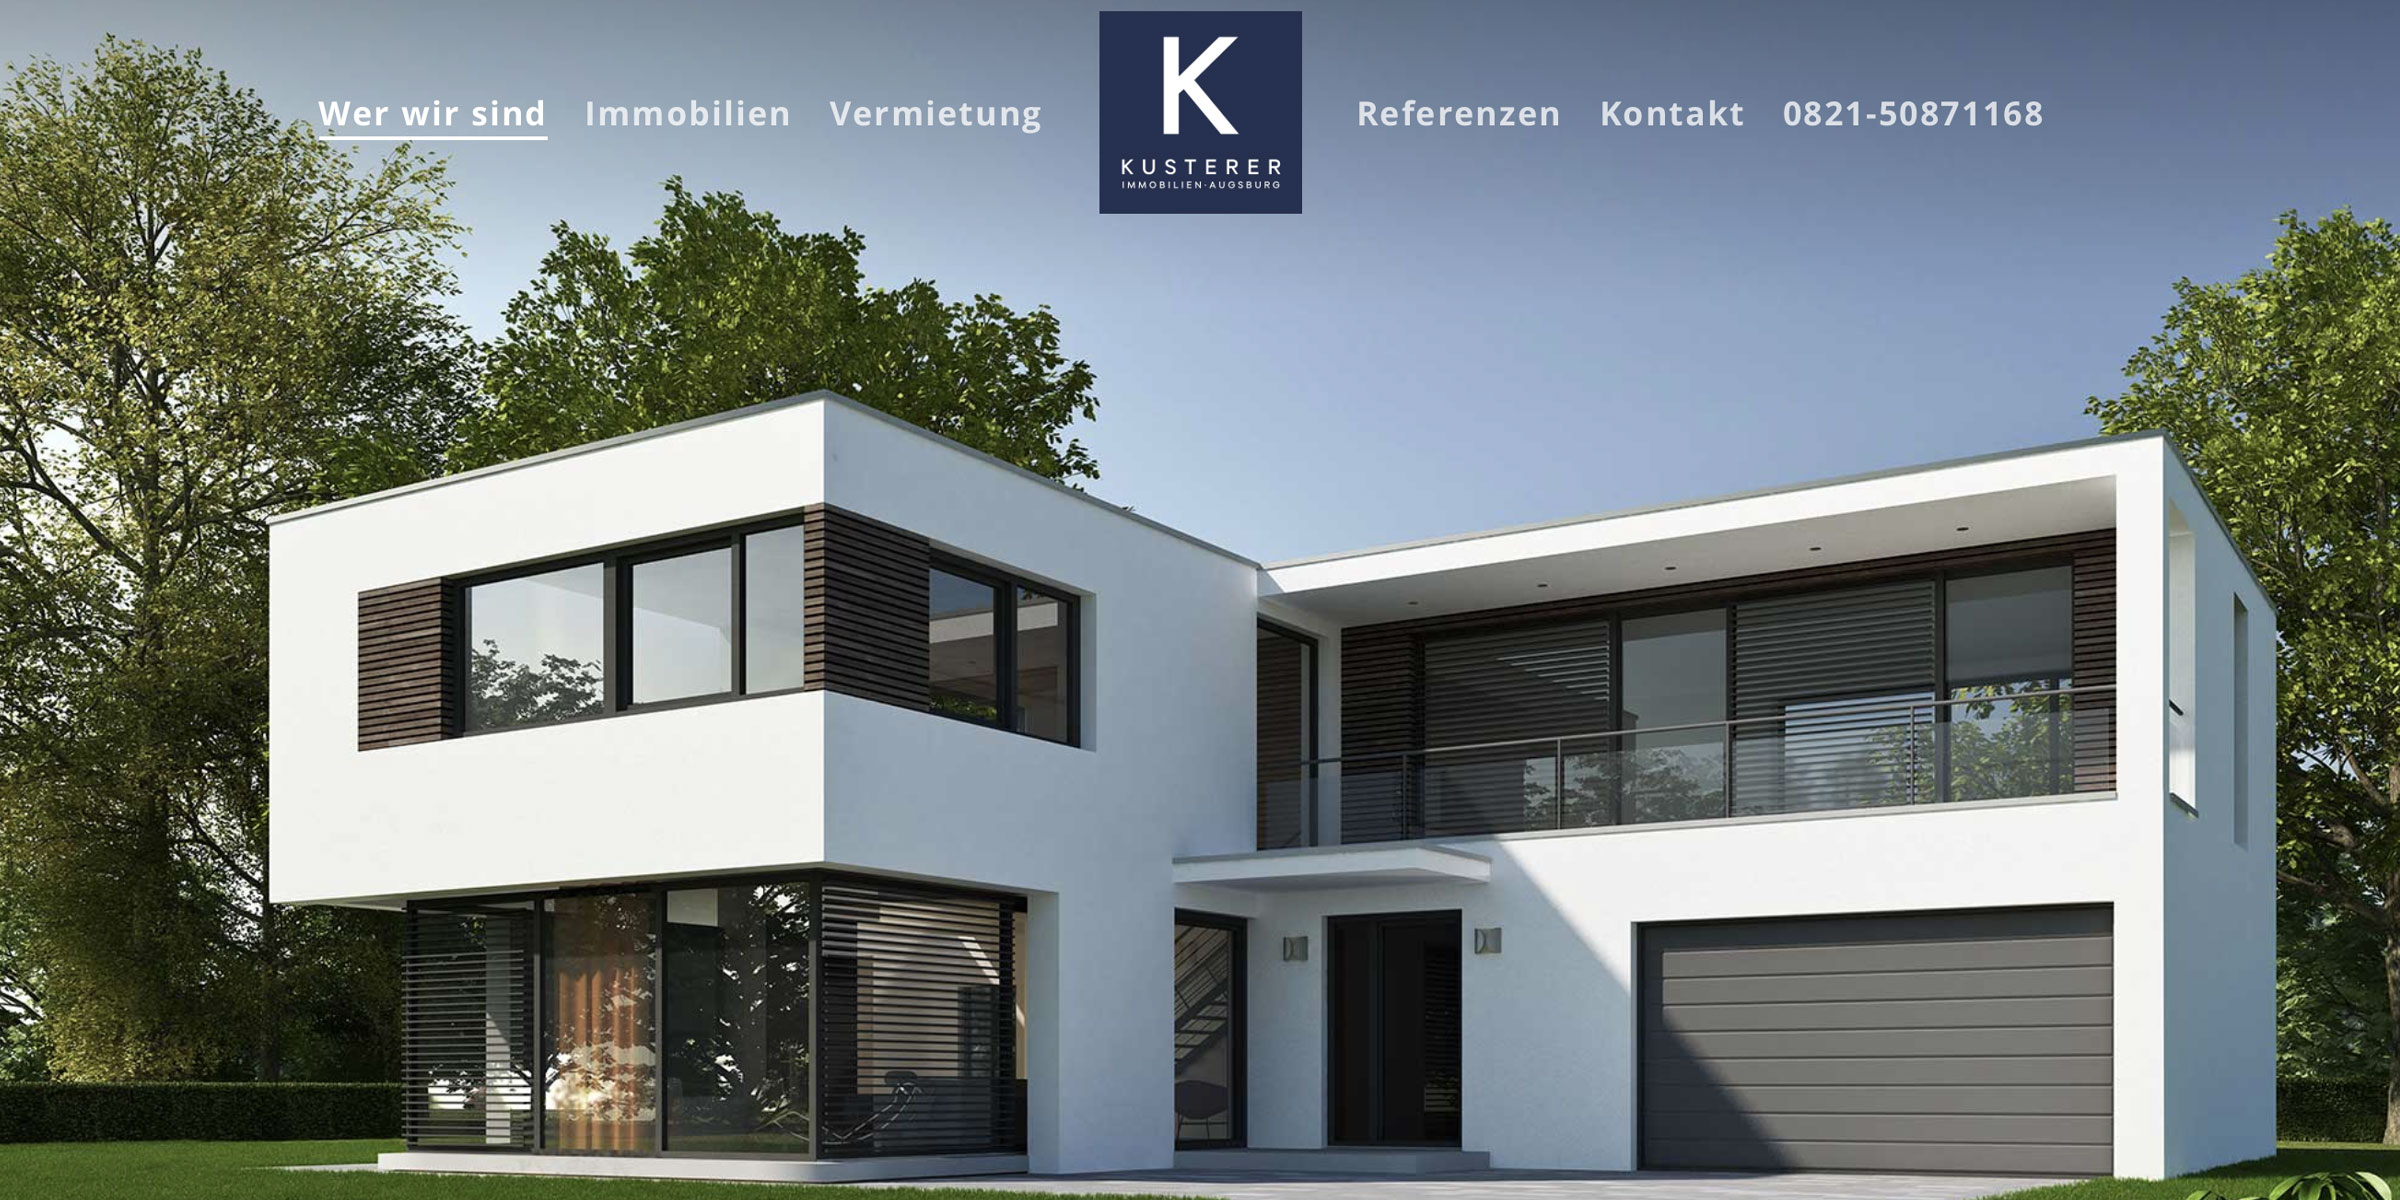 Homepage für den Immobilienmakler aus Augsburg